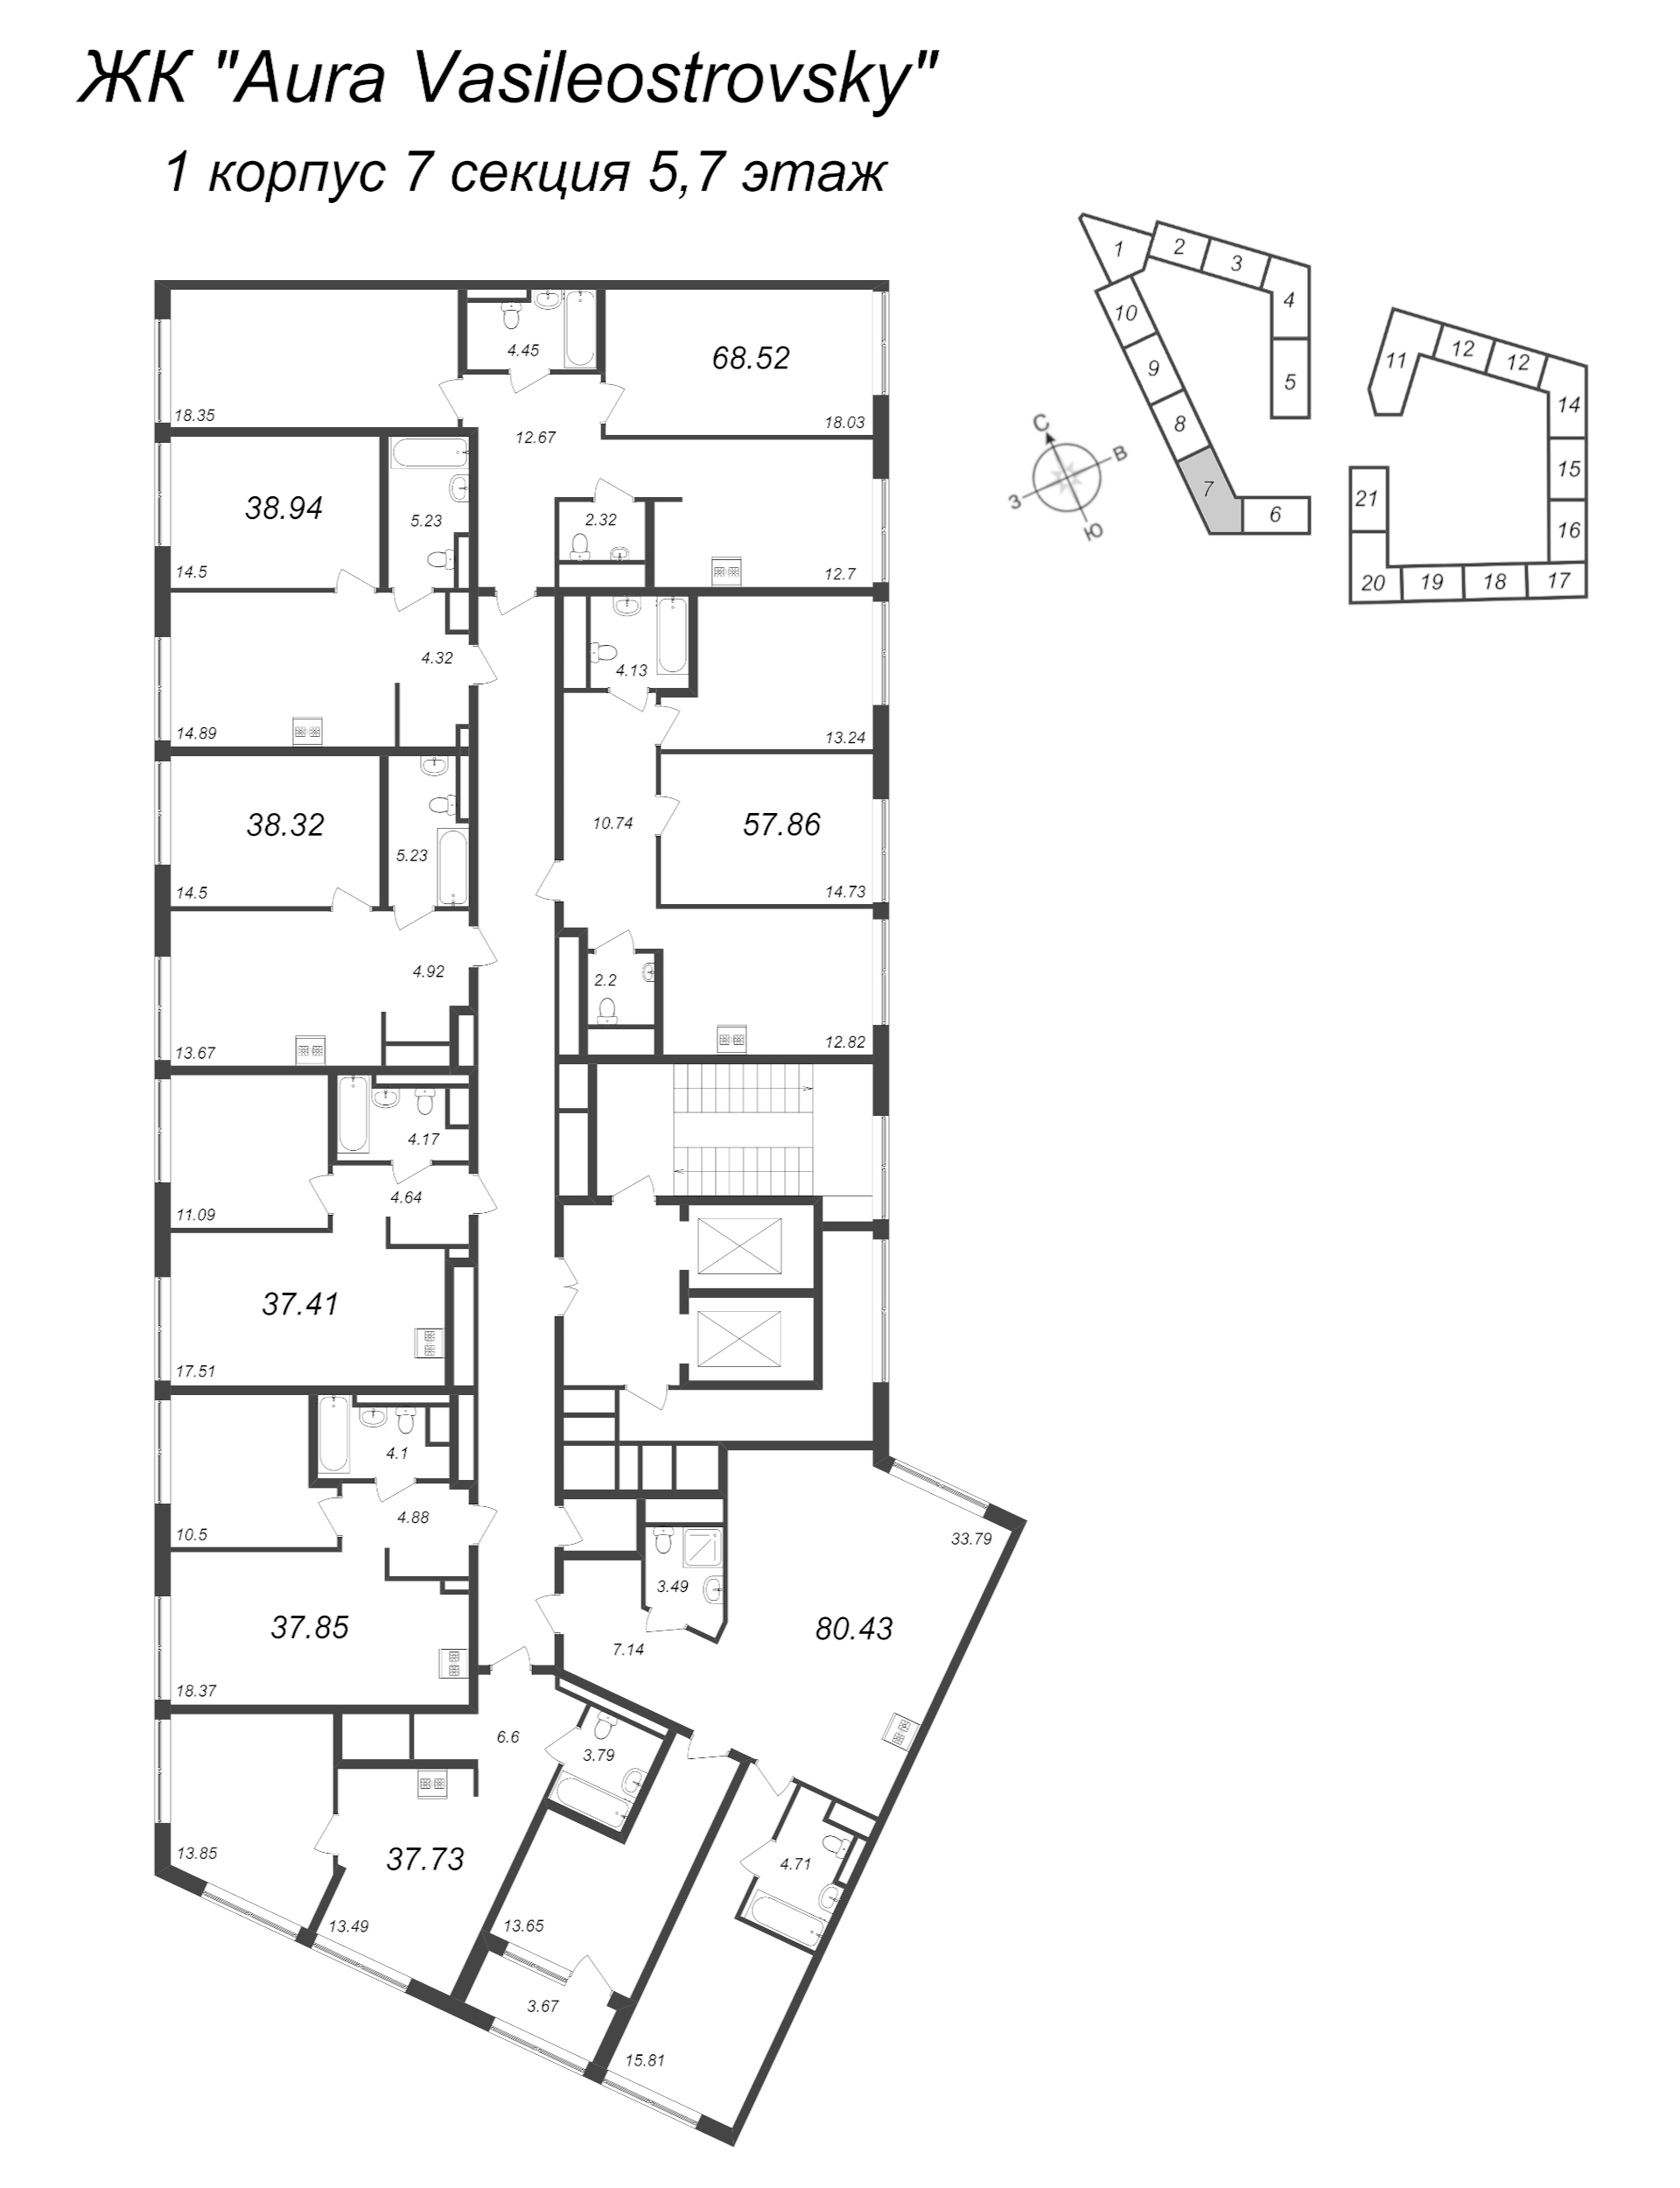 3-комнатная (Евро) квартира, 80.43 м² в ЖК "GloraX Premium Василеостровский" - планировка этажа